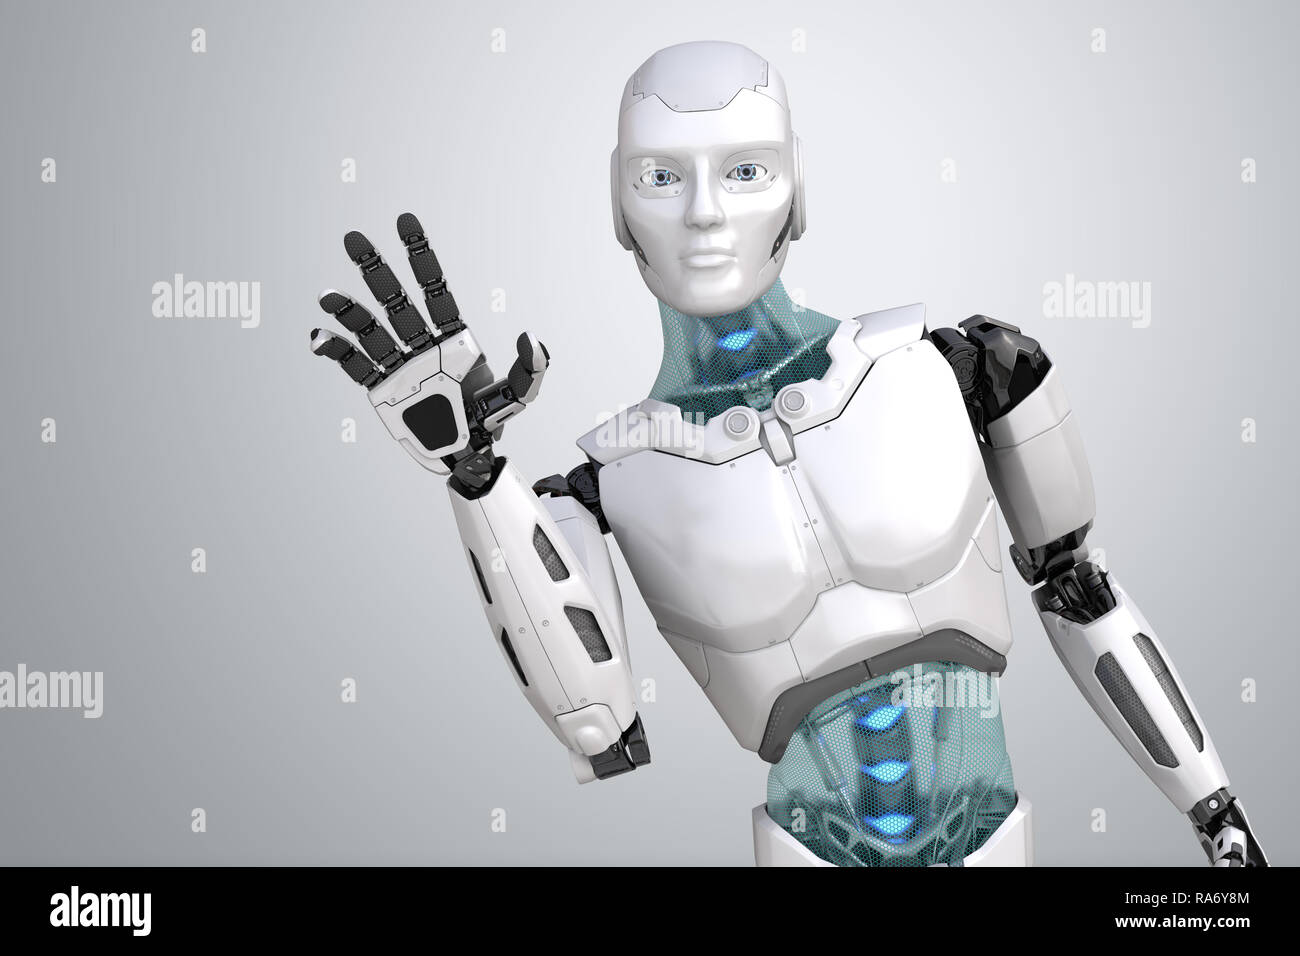 Robot de souhaits agite sa main sur un fond gris clair. 3D illustration Banque D'Images